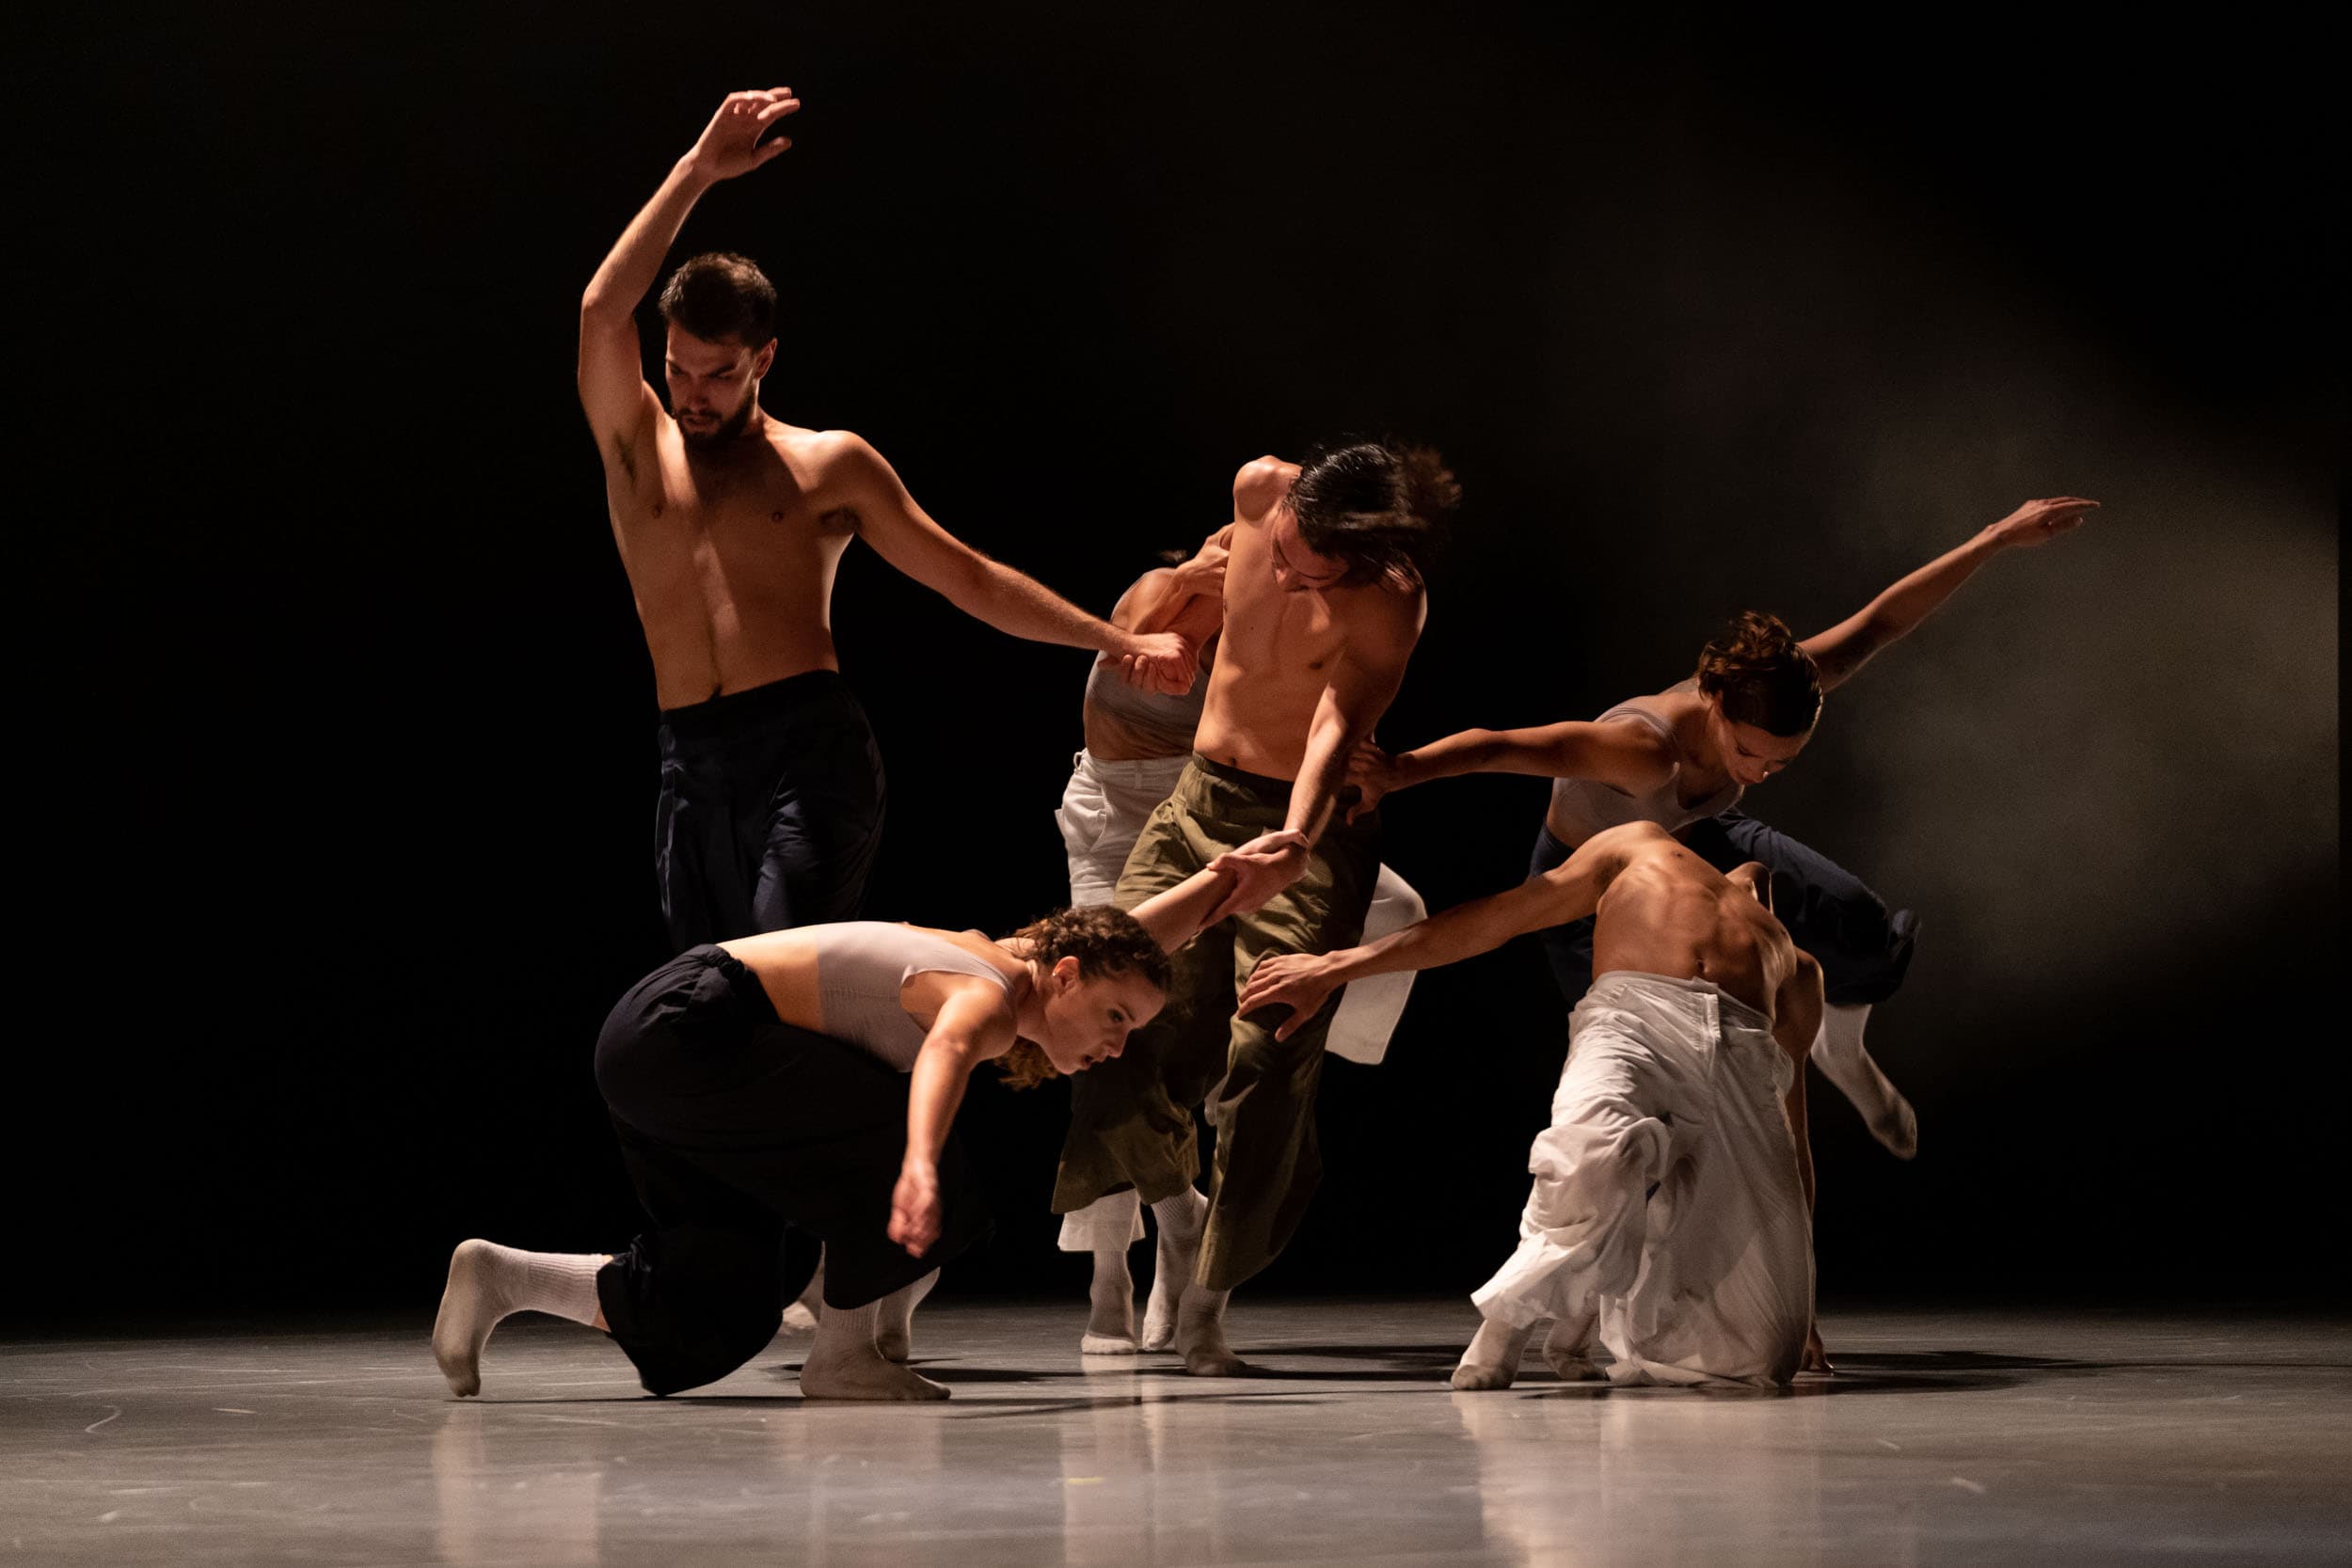 Marcat Dance representará su espectáculo de danza contemporánea ‘Adama’ en el Centro Párraga de Murcia